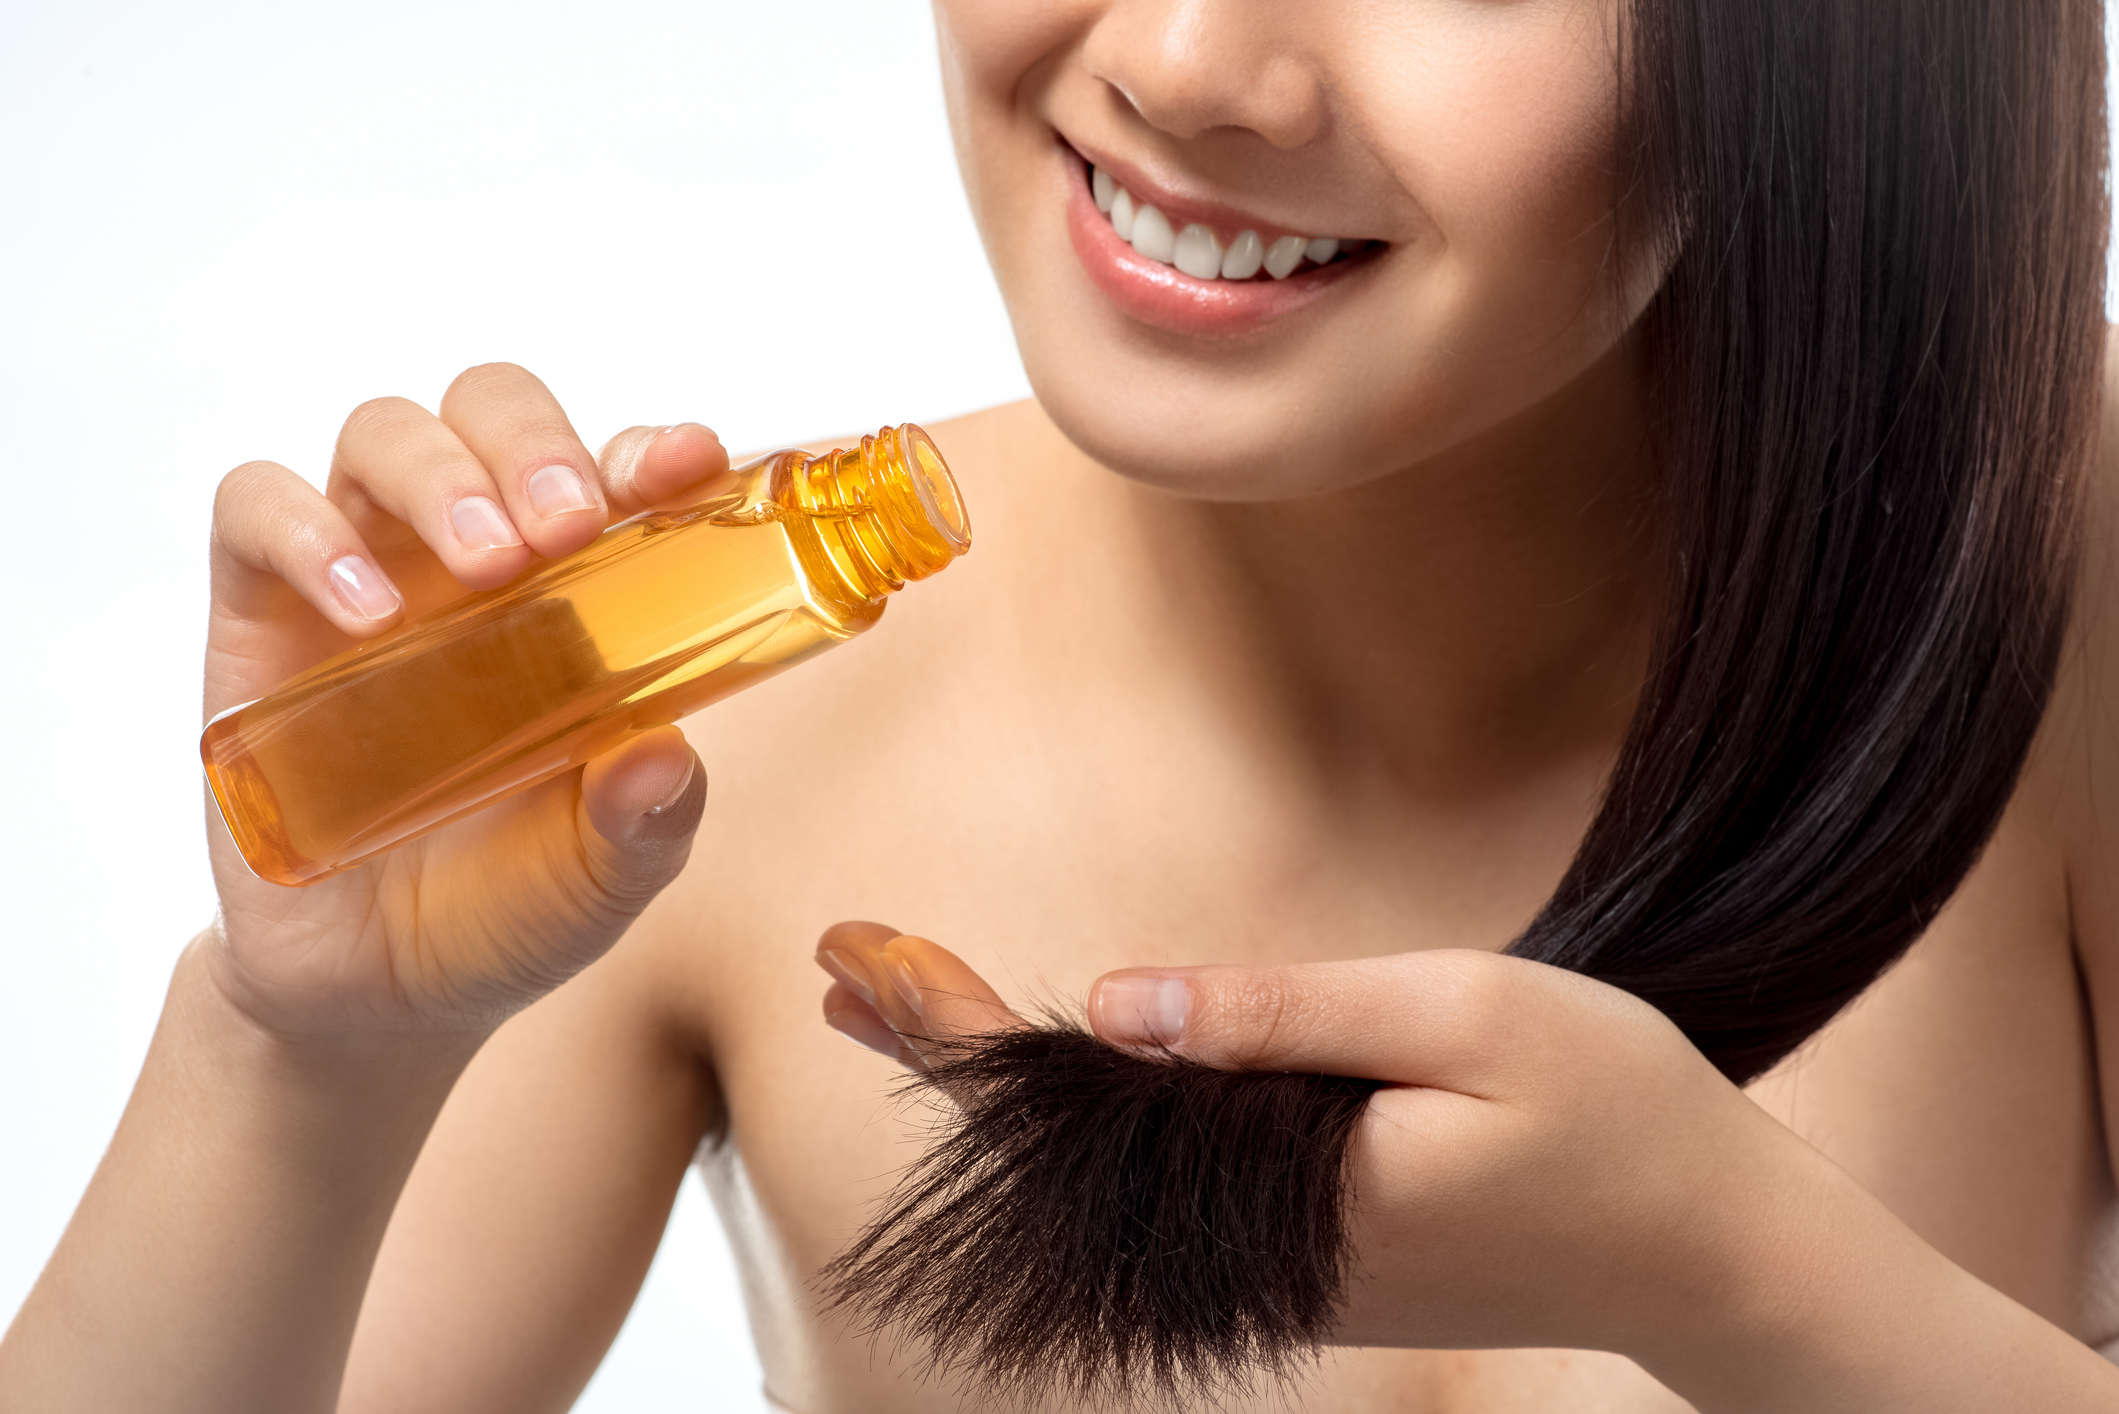 Hair Oil Ke fayde : Benefits of hair oil for hair growth thickening - बालों  में तेल लगाने से होते हैं गजब के फायदे, लेकिन पहले जानें लगाने का तरीका